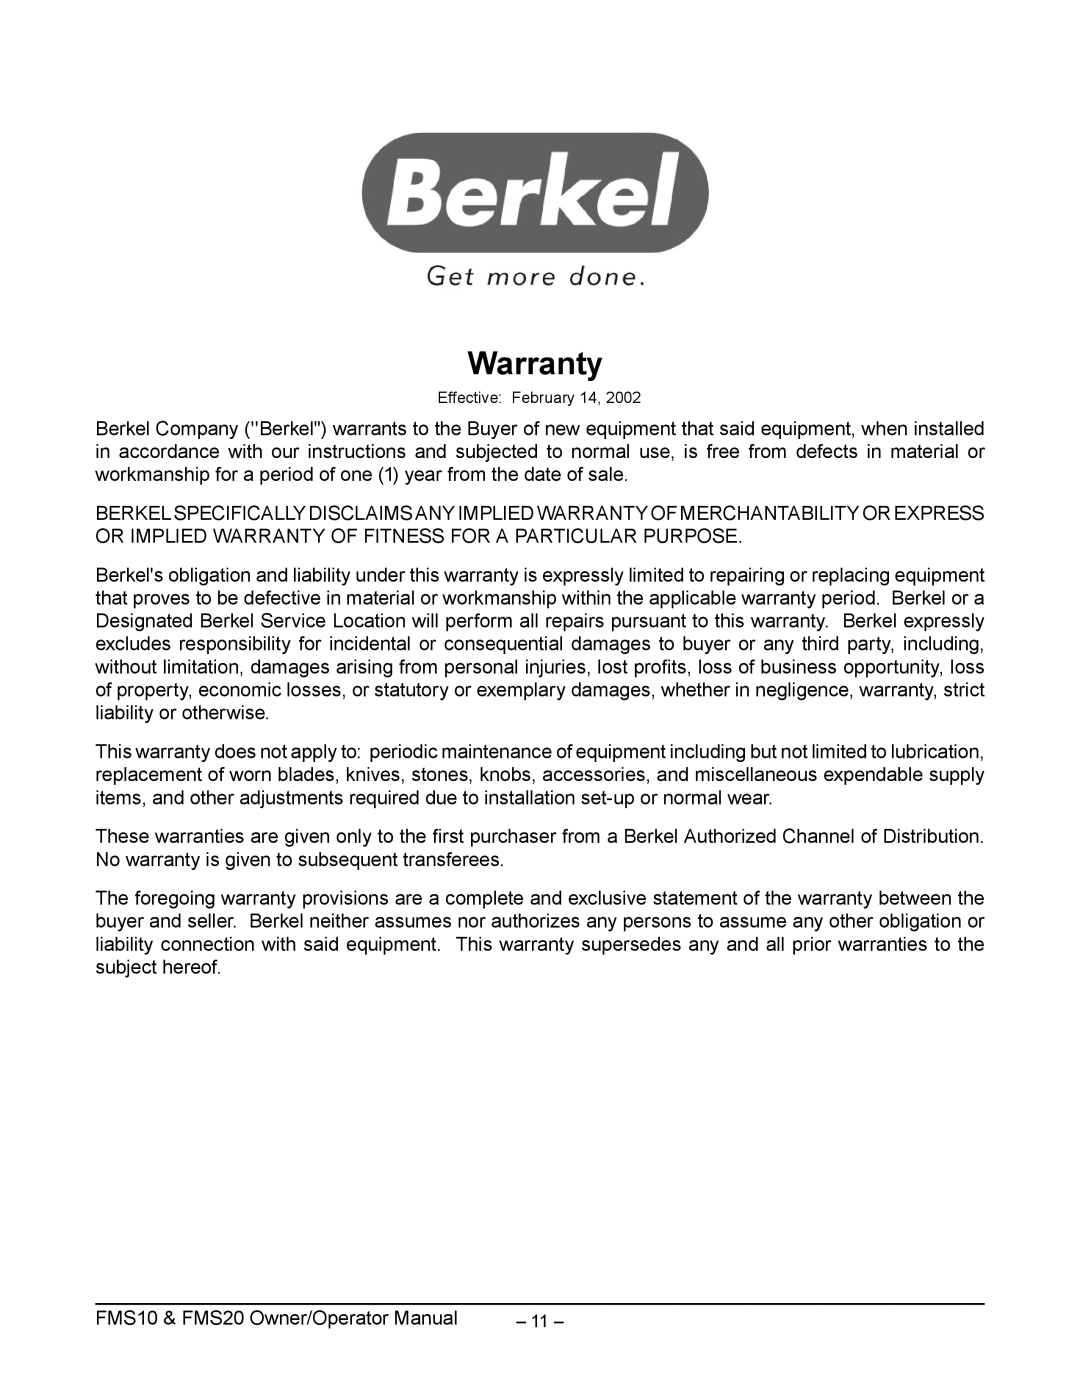 Berkel FMS10, ML-141018, ML-134327, ML-141040, FMS20, ML-141057 manual Warranty, Effective February 